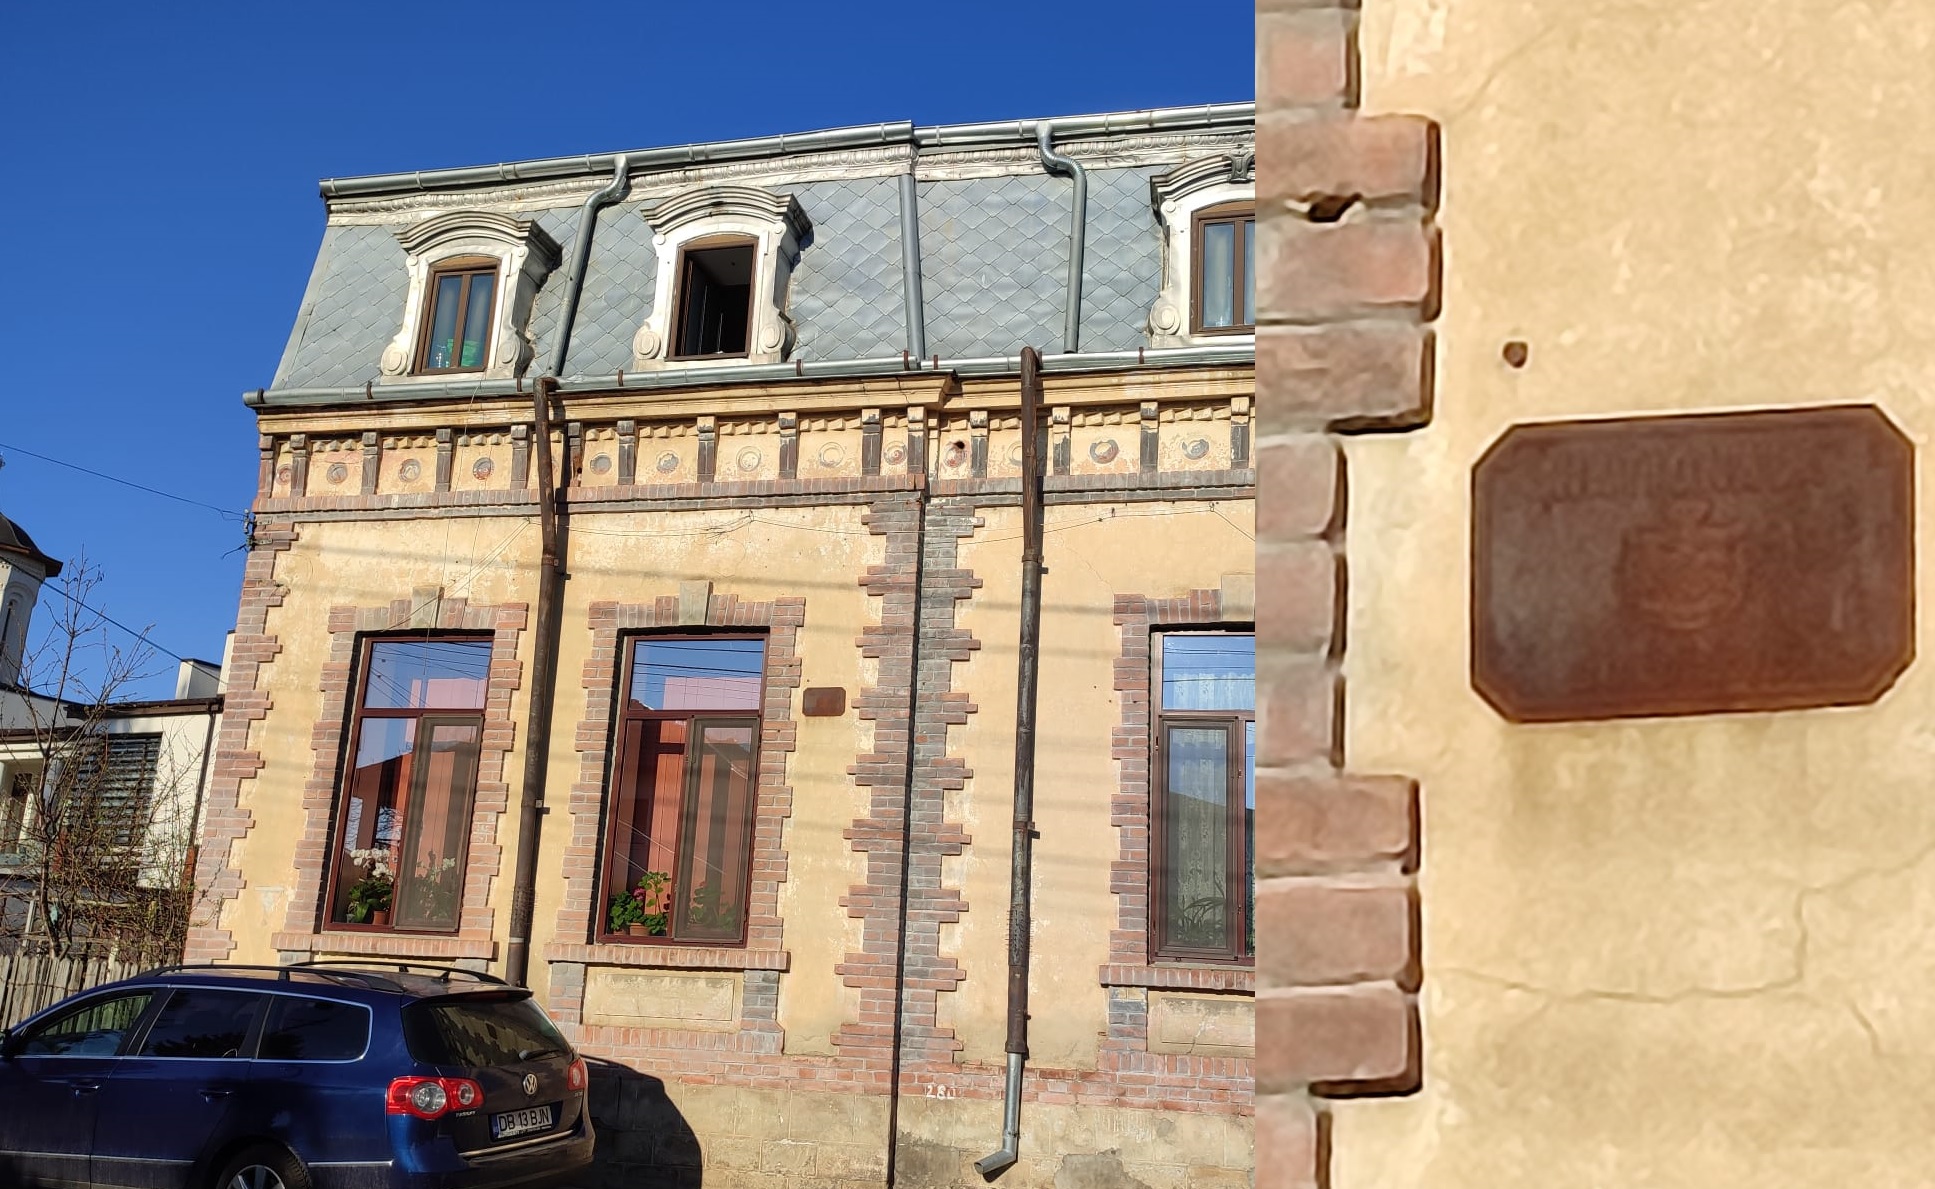 You are currently viewing Misterele Târgoviștei – neobișnuitele plăcute inscripționate “Naționala Bucuresci” rămase pe câteva case vechi